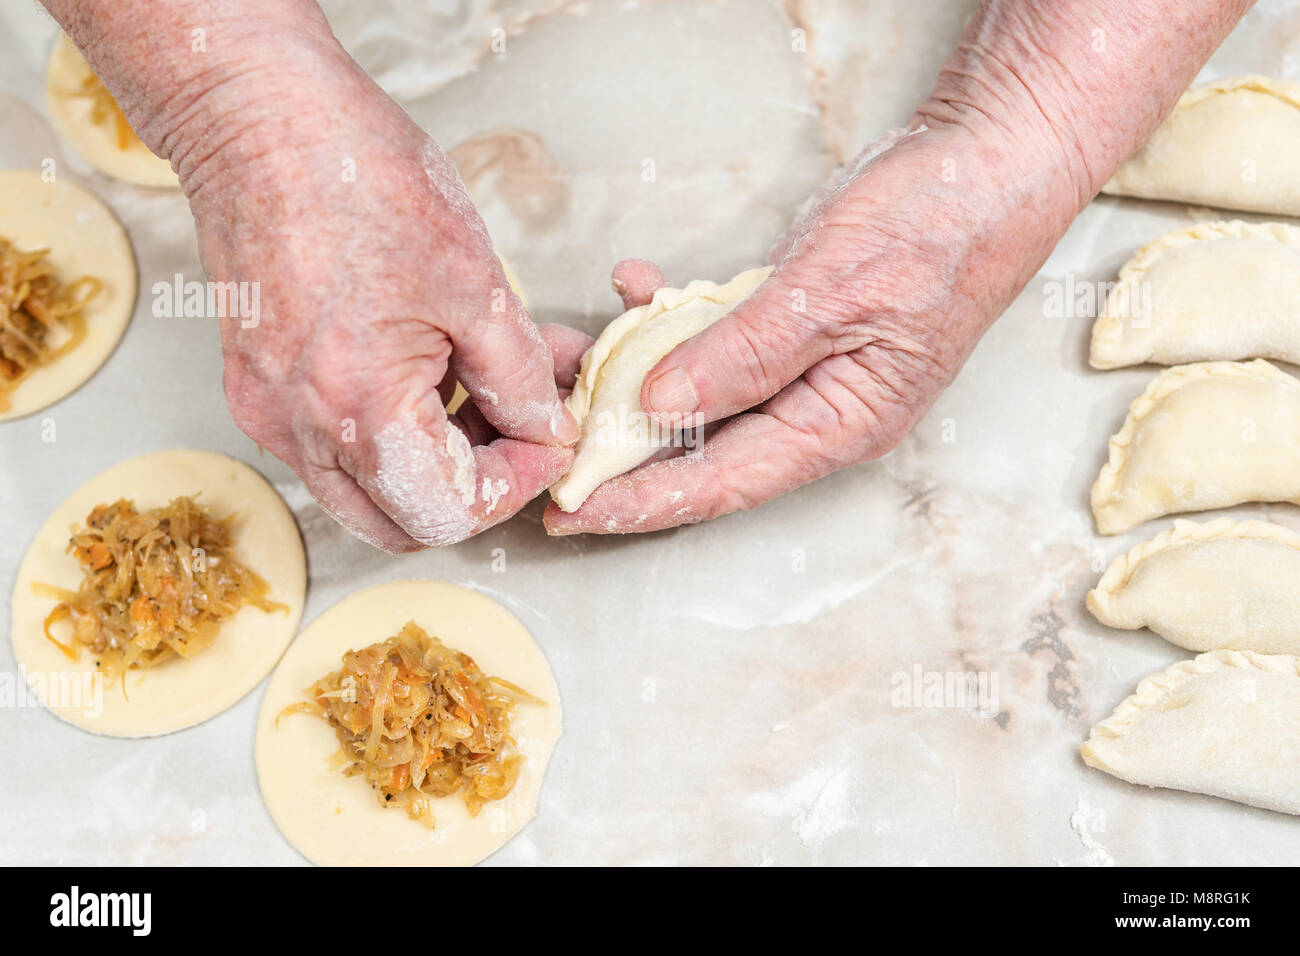 Le mani della donna di vecchio stampo vareniki con cavolo al di sopra della tabella Foto Stock